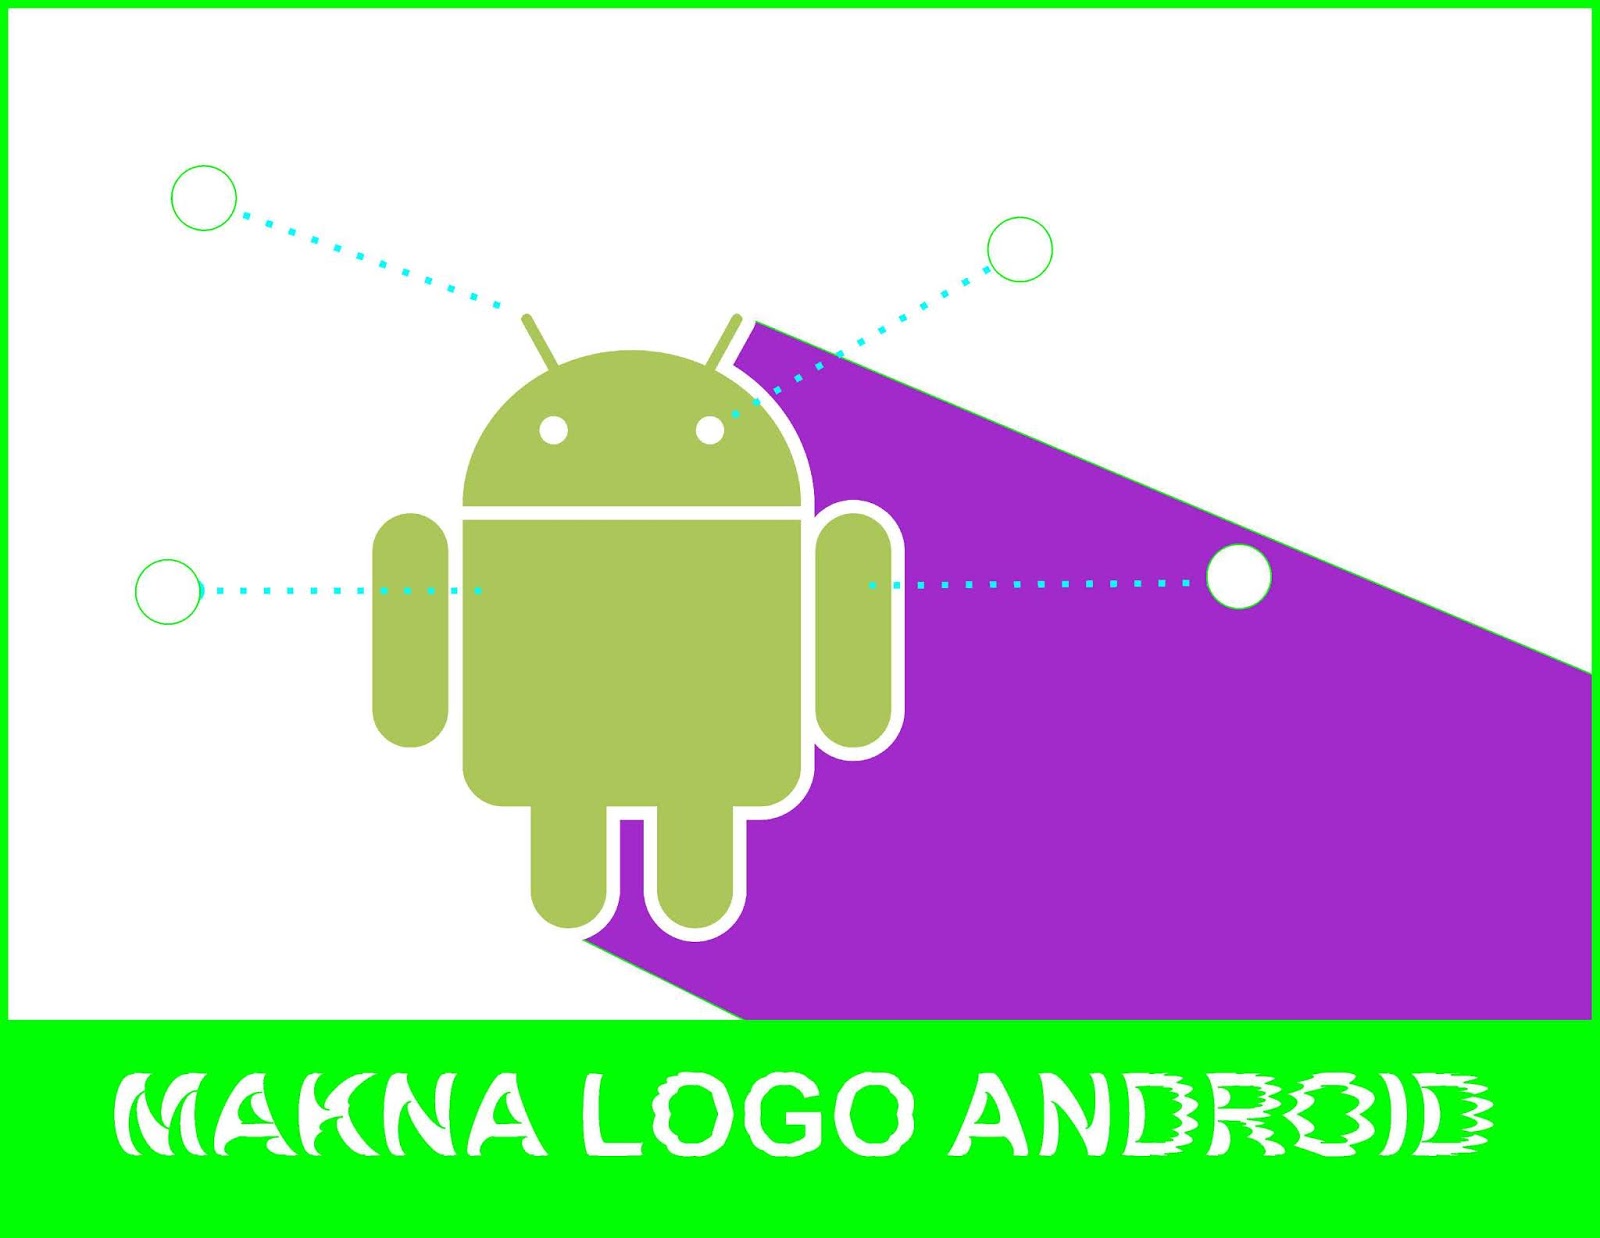 Создание логотипов андроид. Андроид студио логотип. Галерея андроид логотип. Лого андроид и замок. Логотип андроид из зеркала.